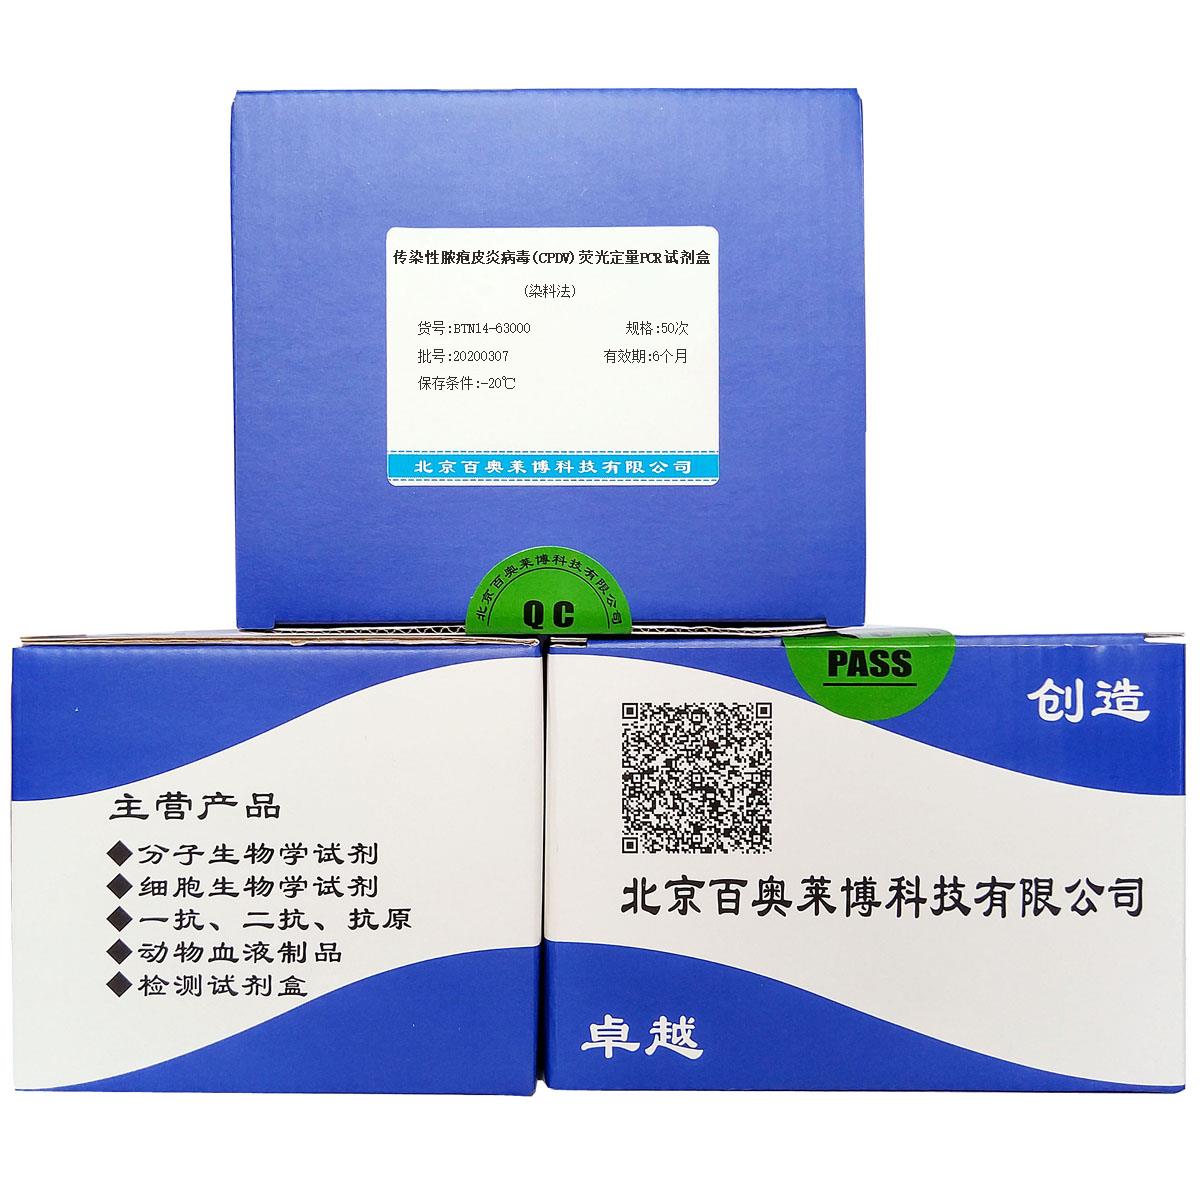 传染性脓疱皮炎病毒(CPDV)荧光定量PCR试剂盒(染料法)